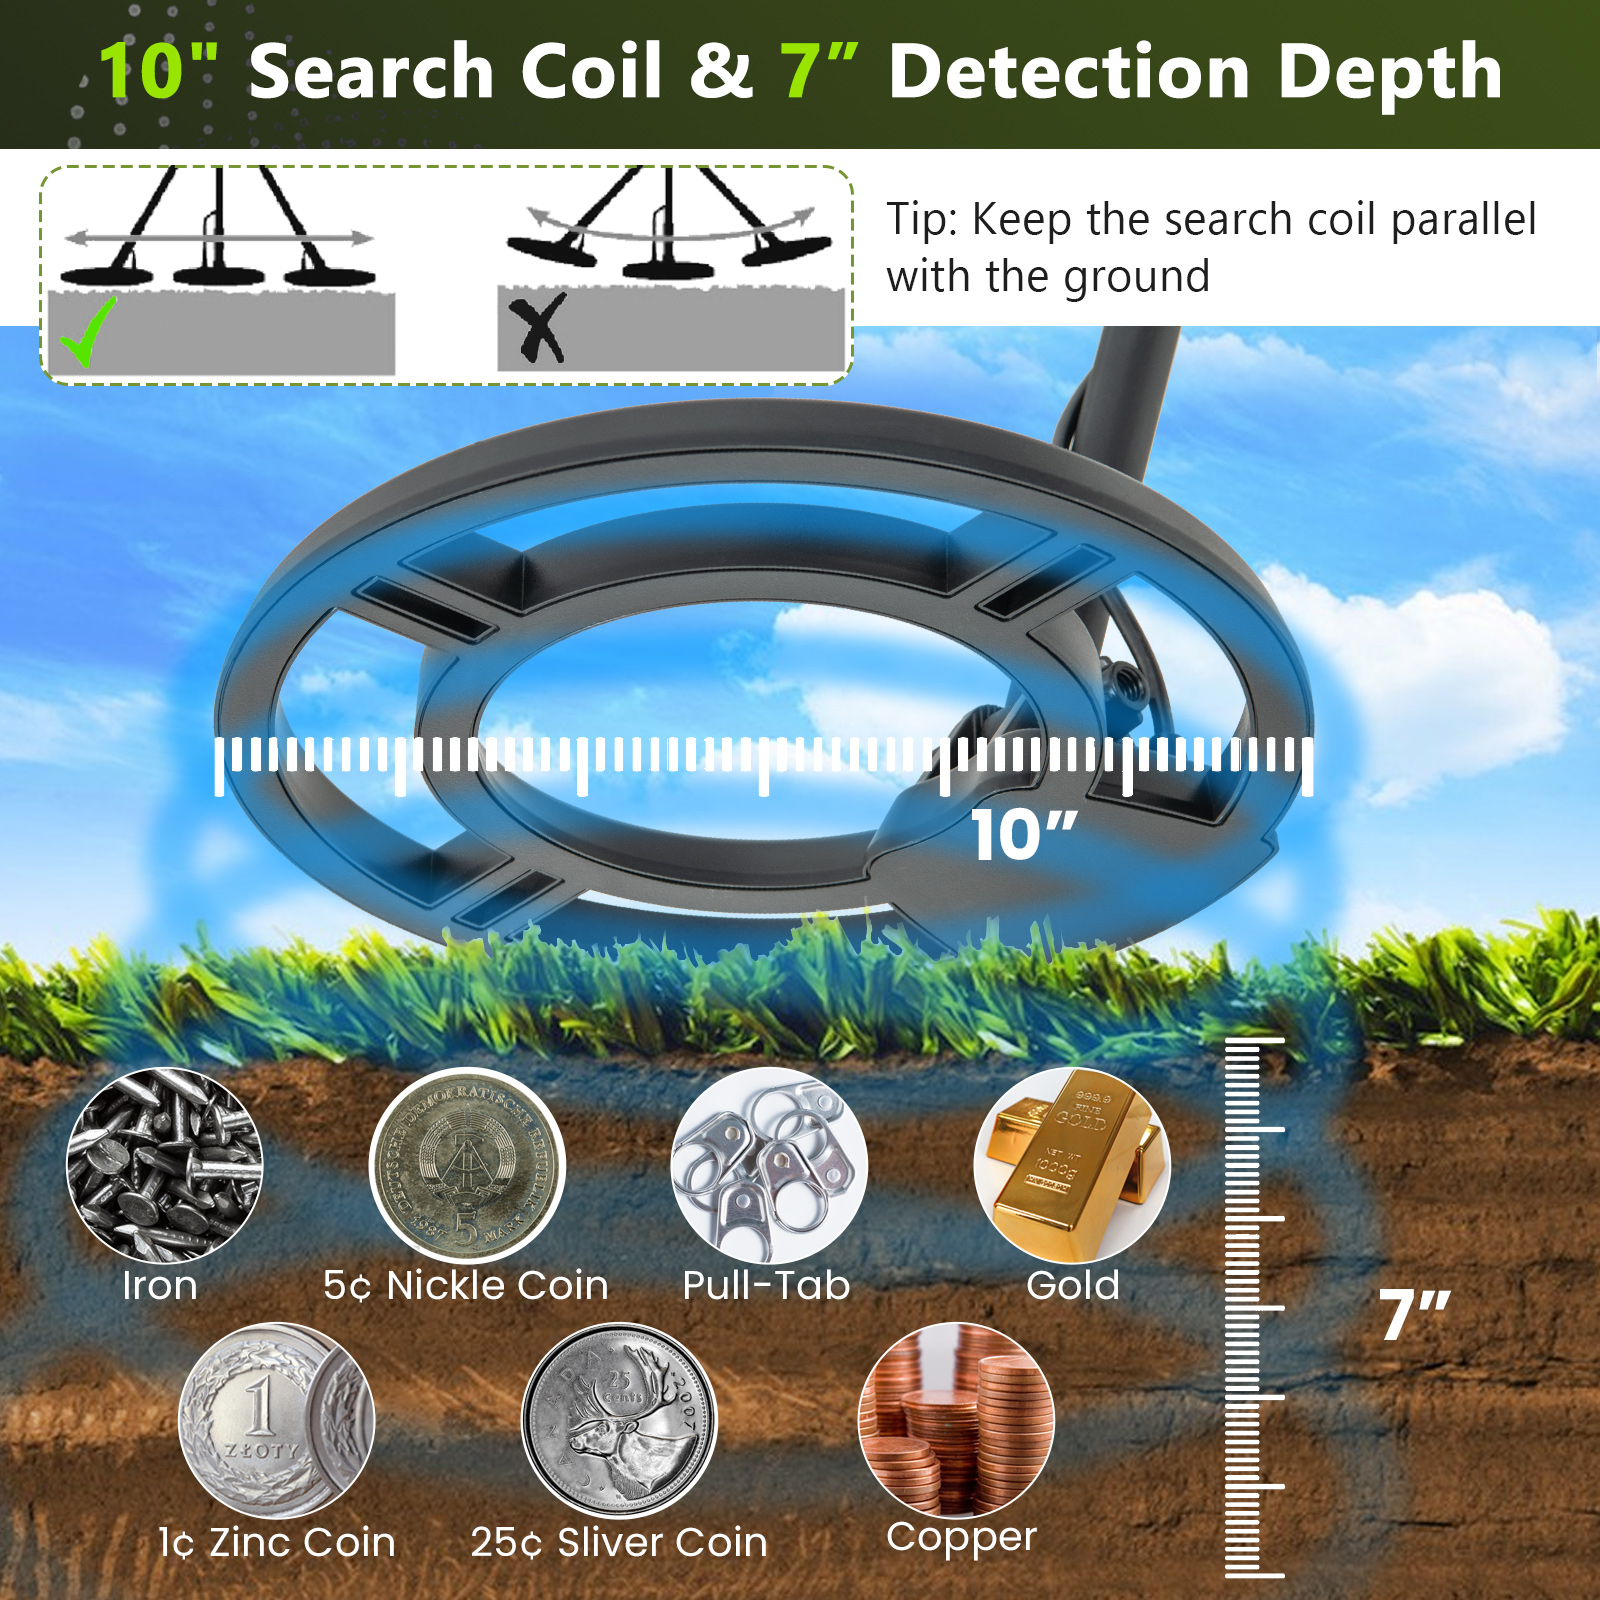 Costway High Accuracy Metal Detector Kit W/Display Waterproof Search Coil Headphone Bag